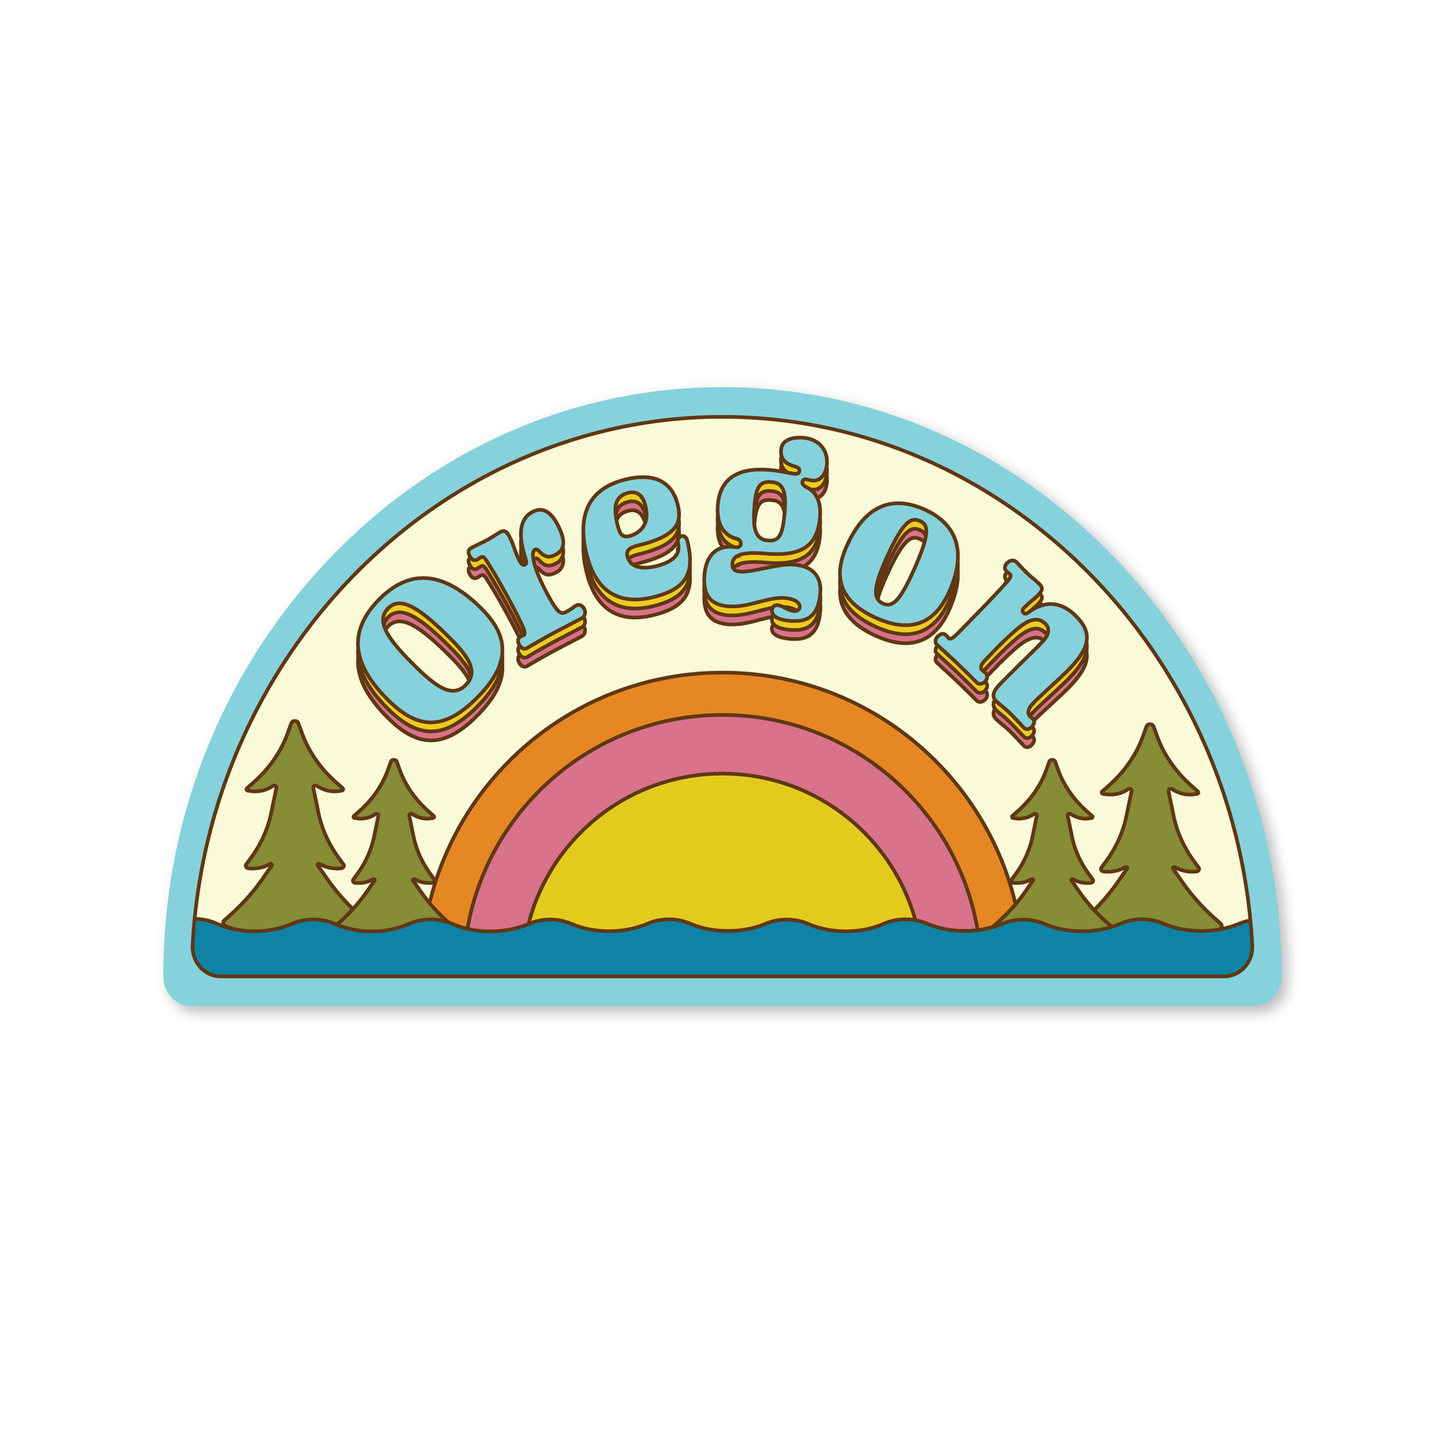 Retro Oregon Sticker